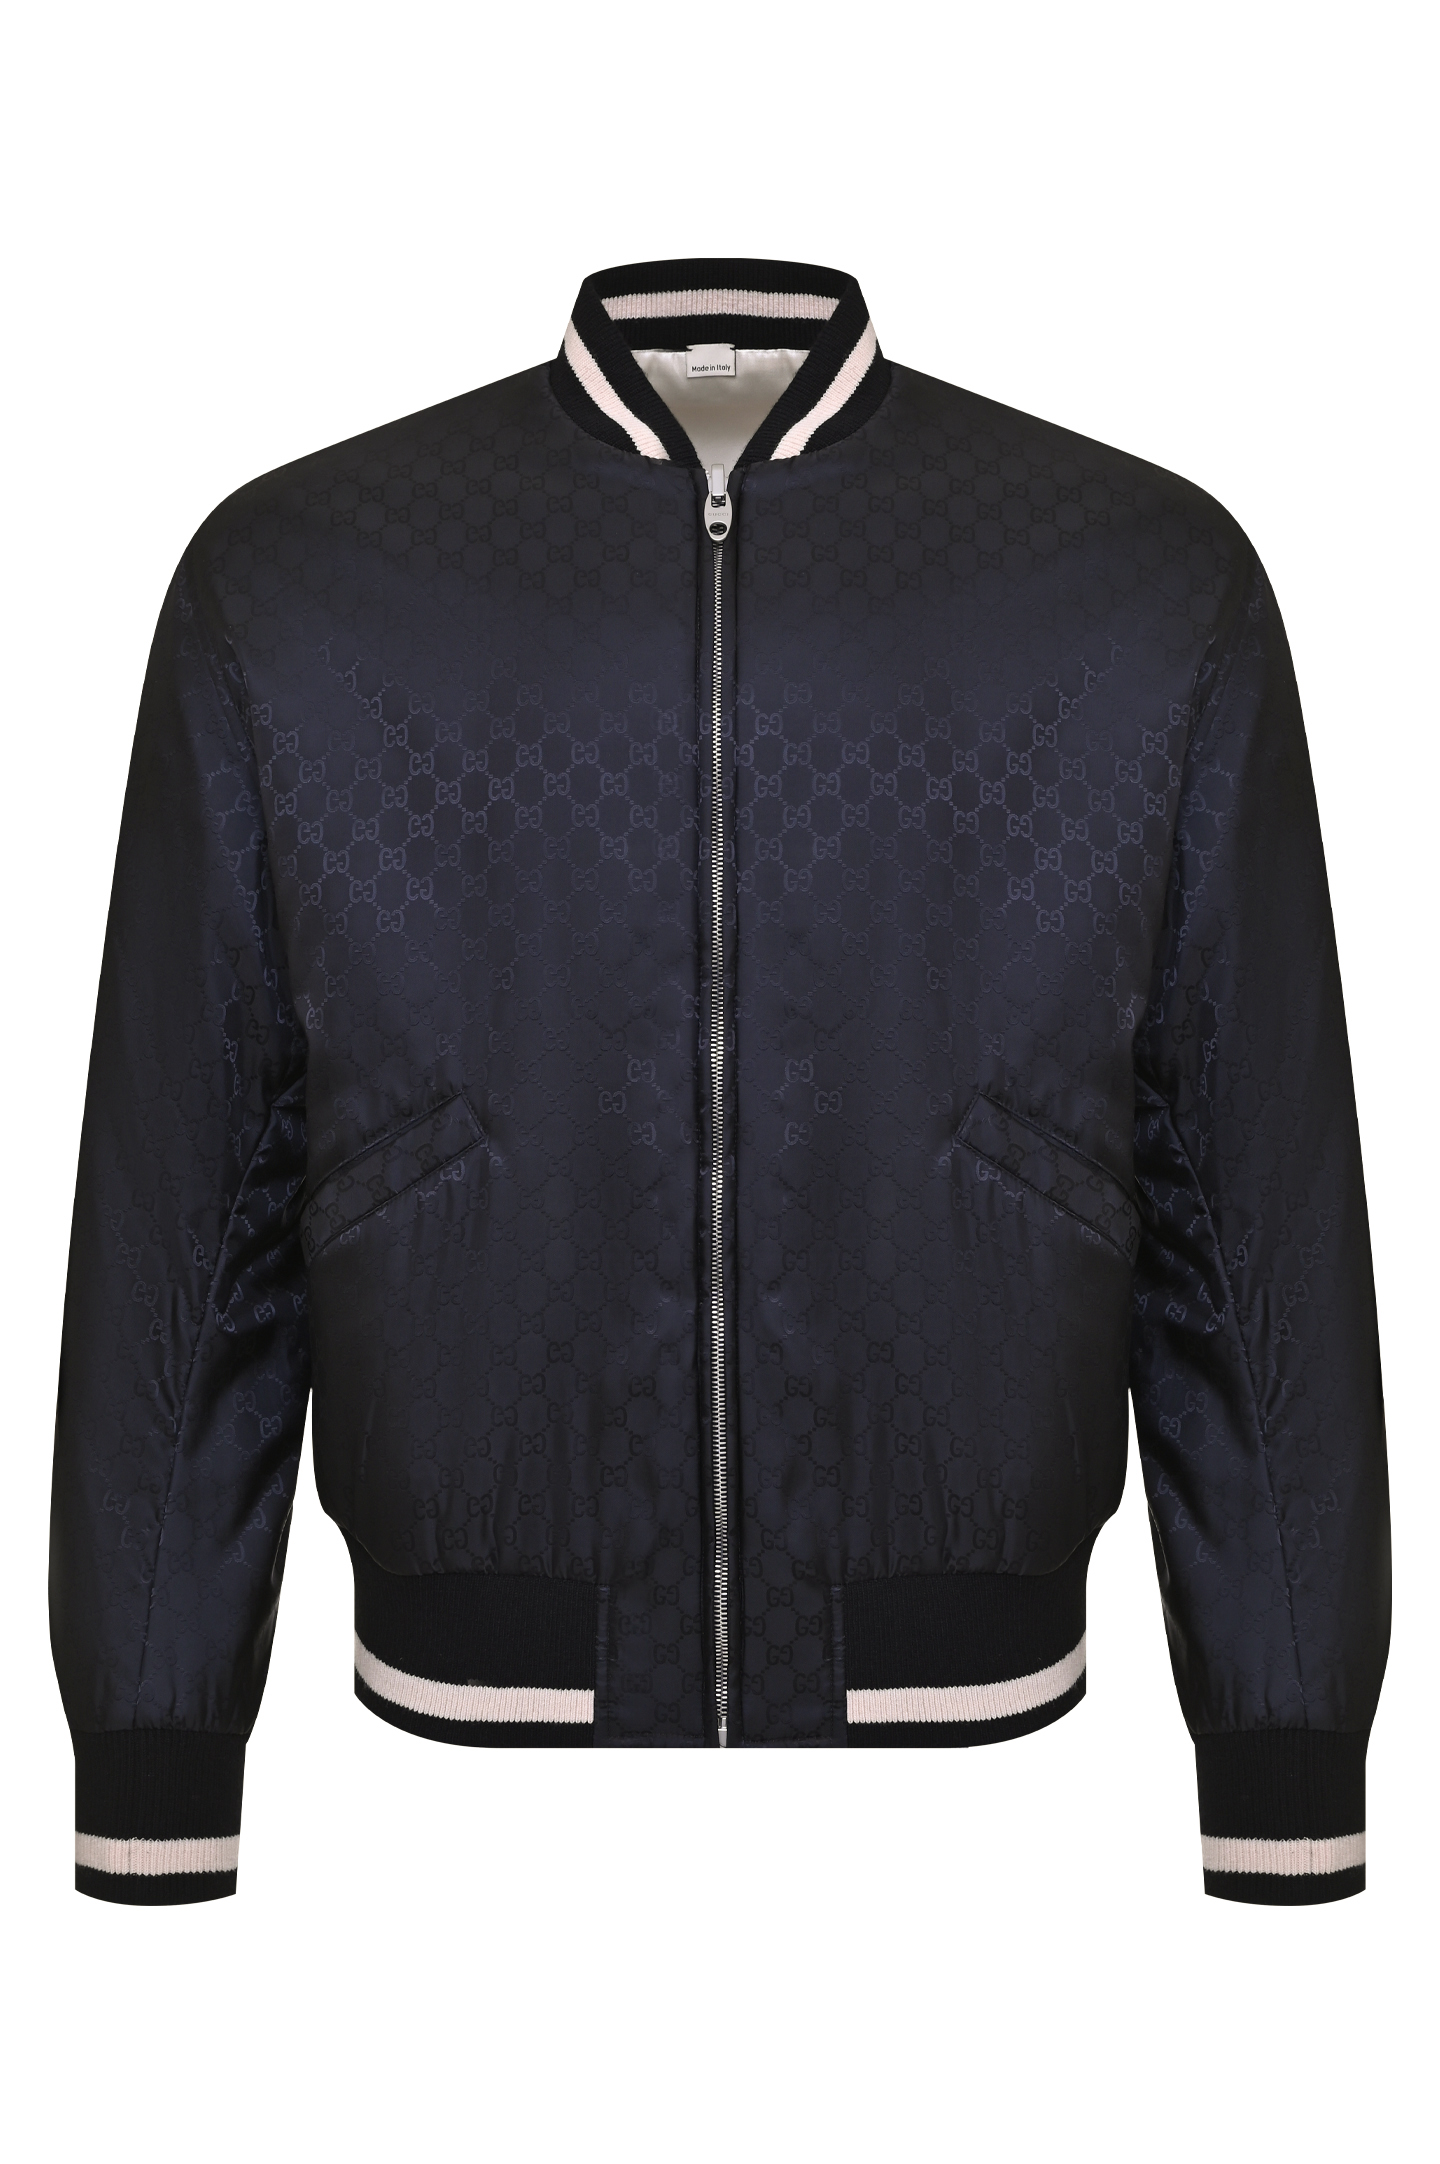 Куртка GUCCI 672259 ZAHV9, цвет: Черный, Мужской